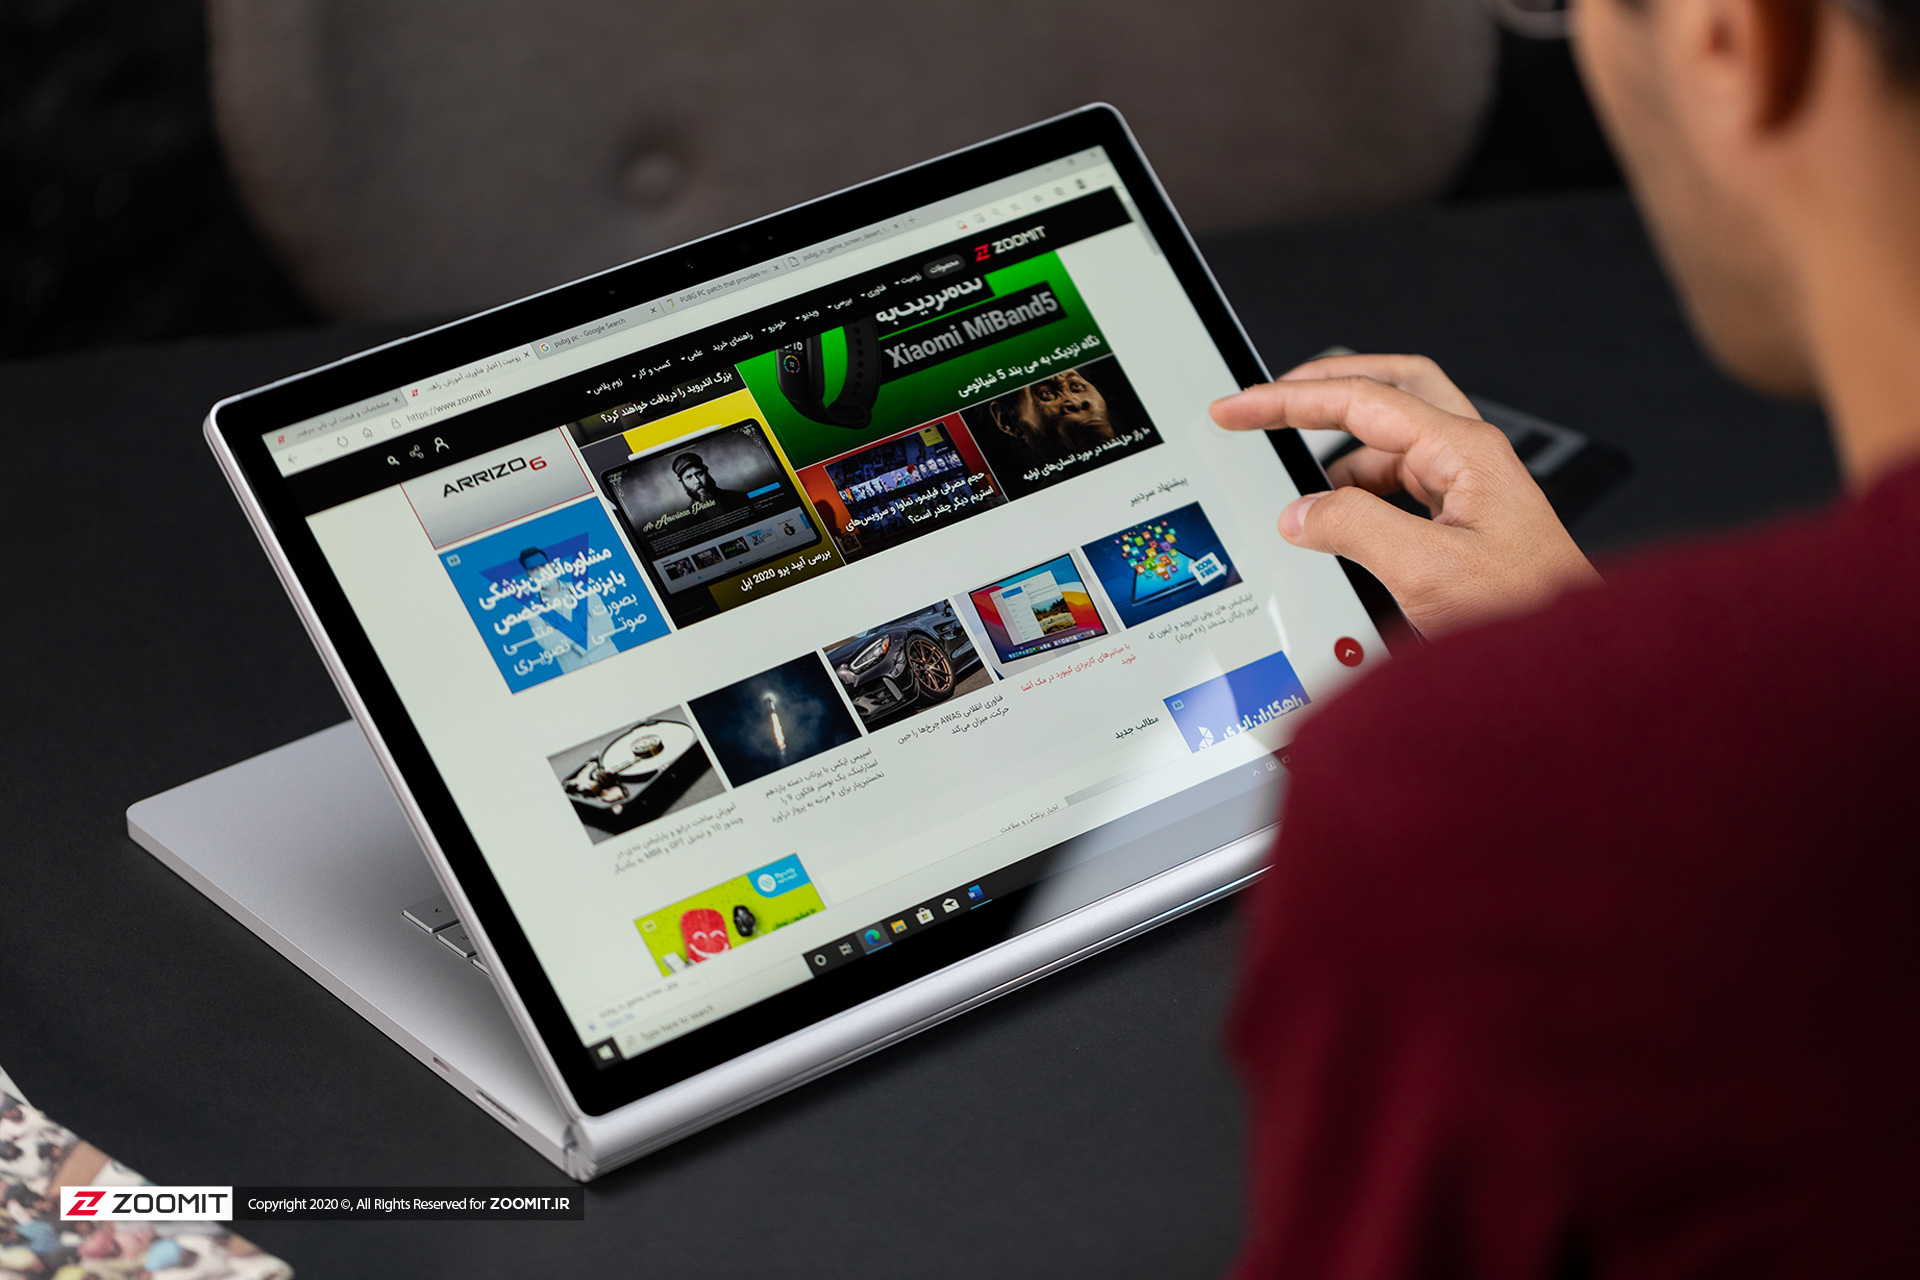 نمایشگر لمسی سرفیس بوک ۳ مایکروسافت / Microsoft Surface Book 3